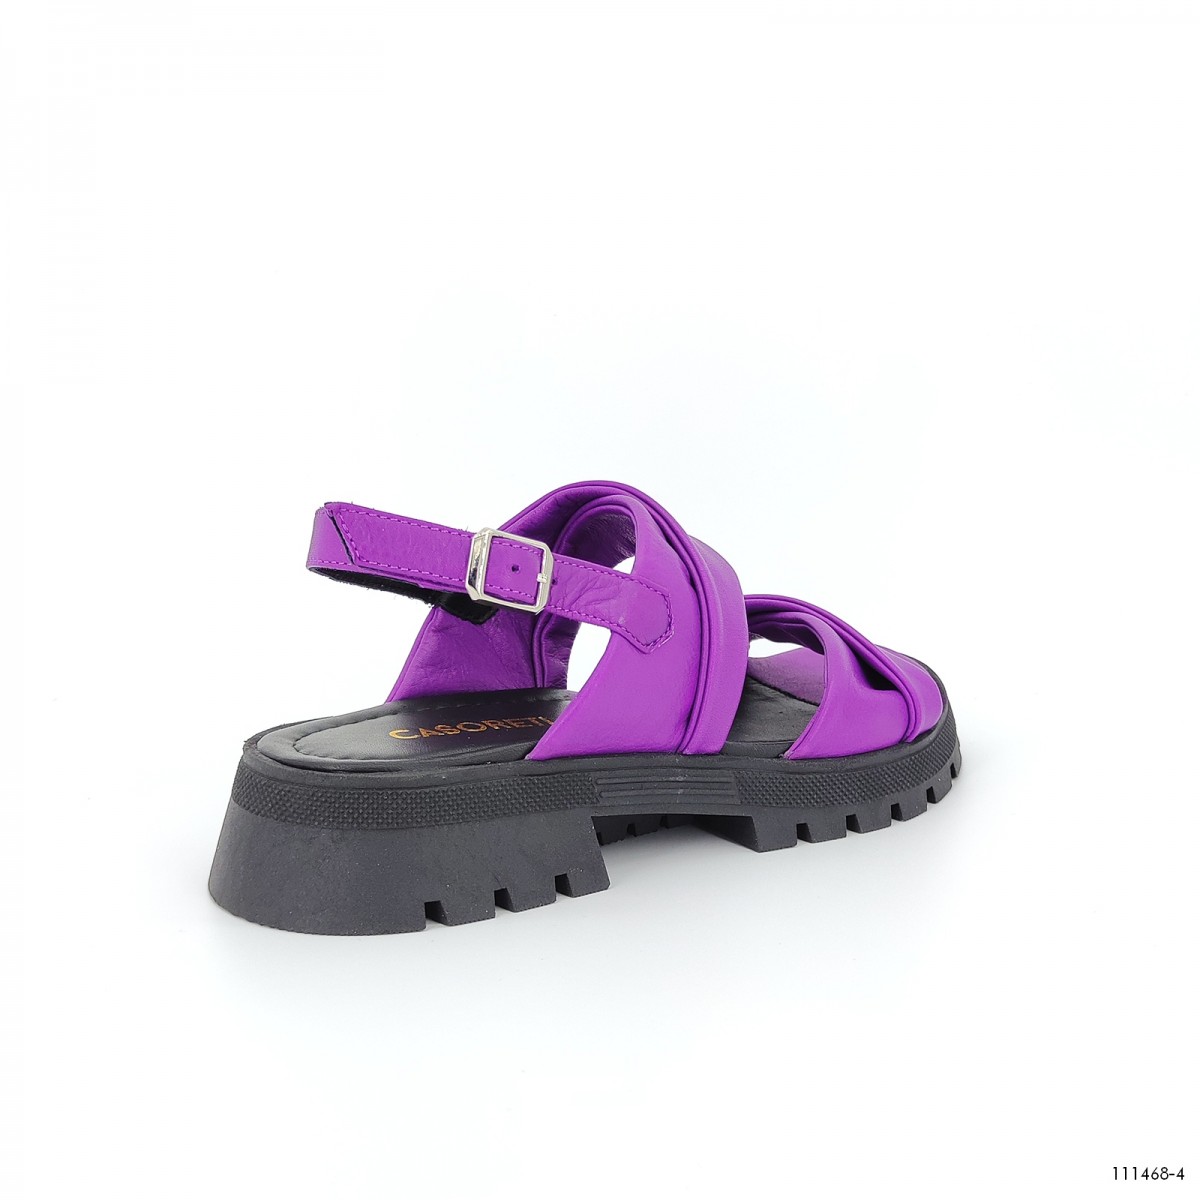  женские сандали на платформе летние Casoreti  фиолетовый 